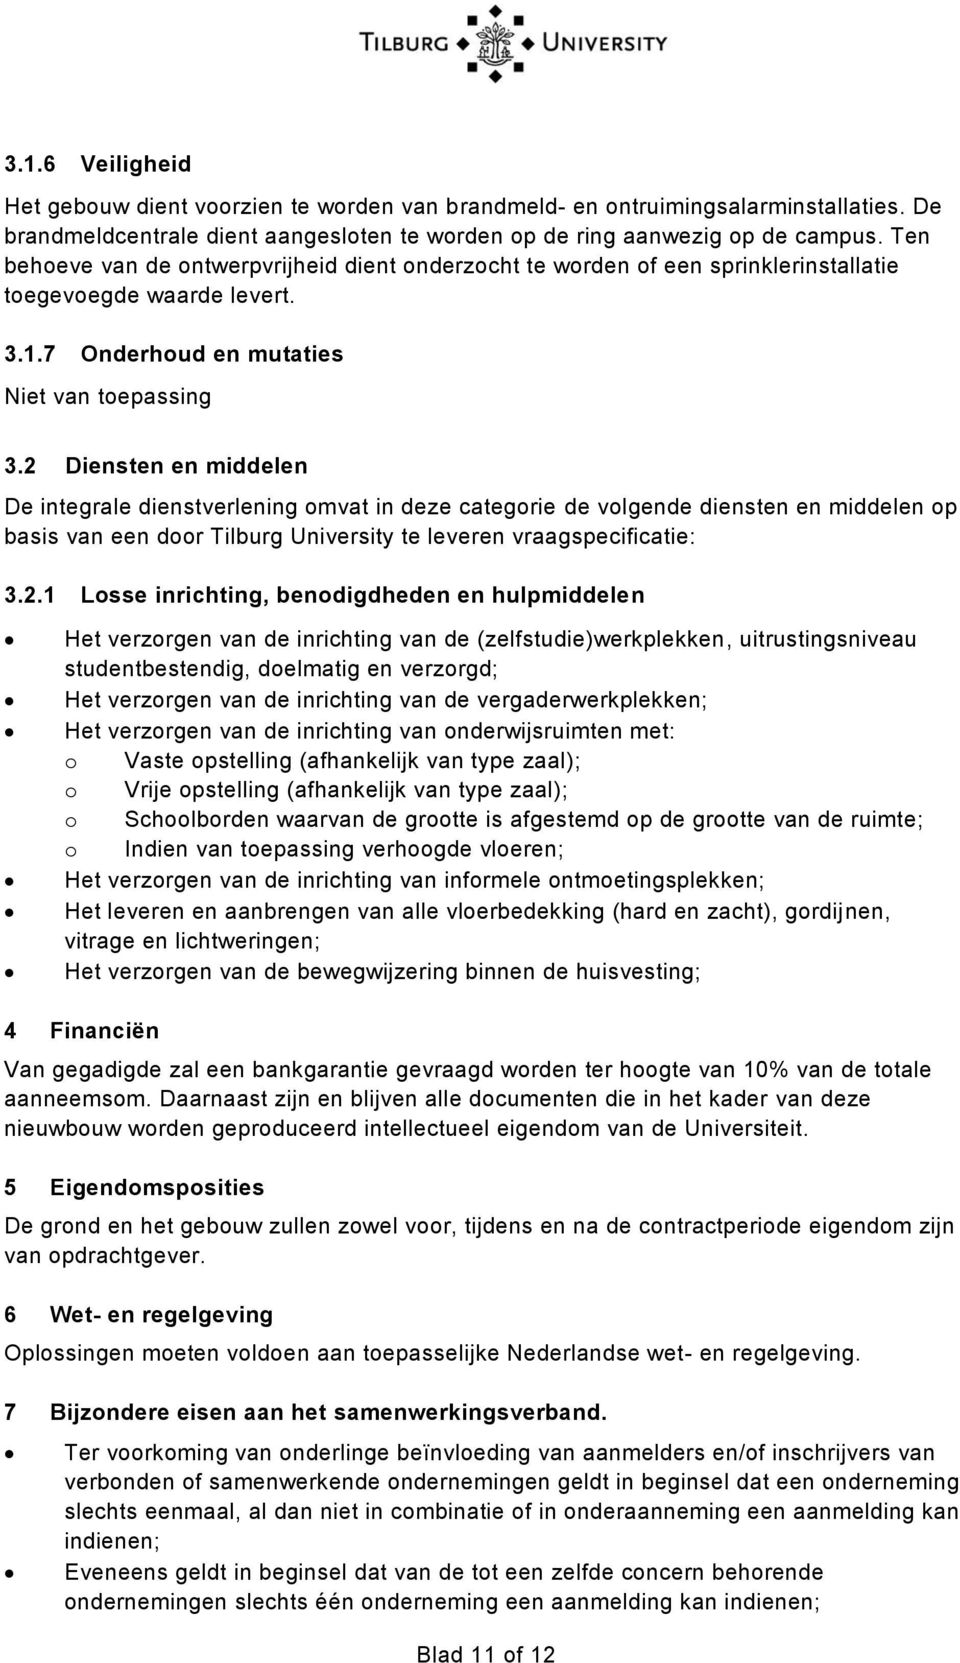 2 Diensten en middelen De integrale dienstverlening omvat in deze categorie de volgende diensten en middelen op basis van een door Tilburg University te leveren vraagspecificatie: 3.2.1 Losse